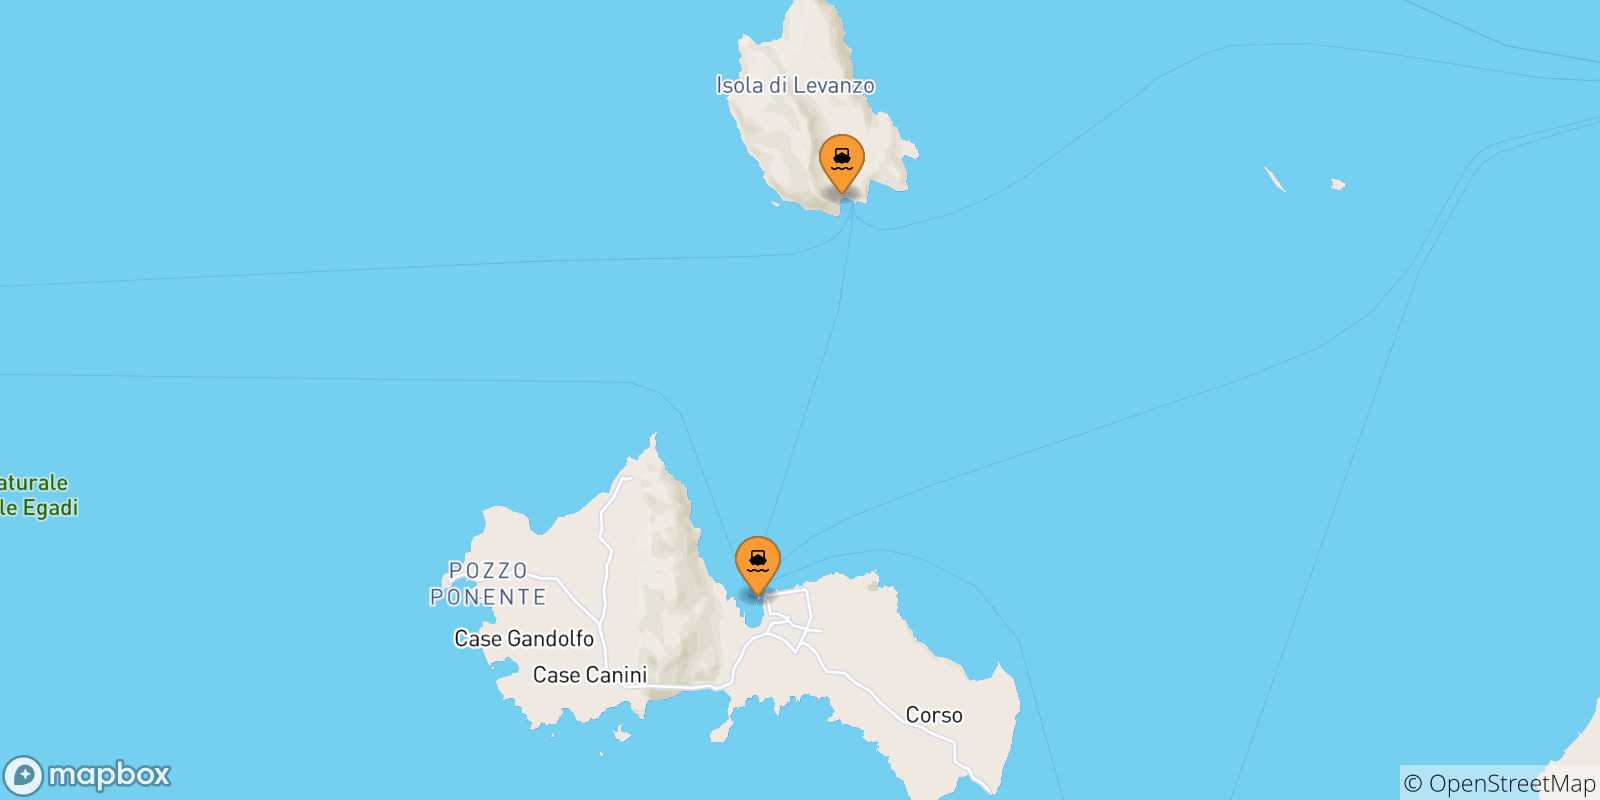 Mappa delle possibili rotte tra le Isole Egadi e Marettimo